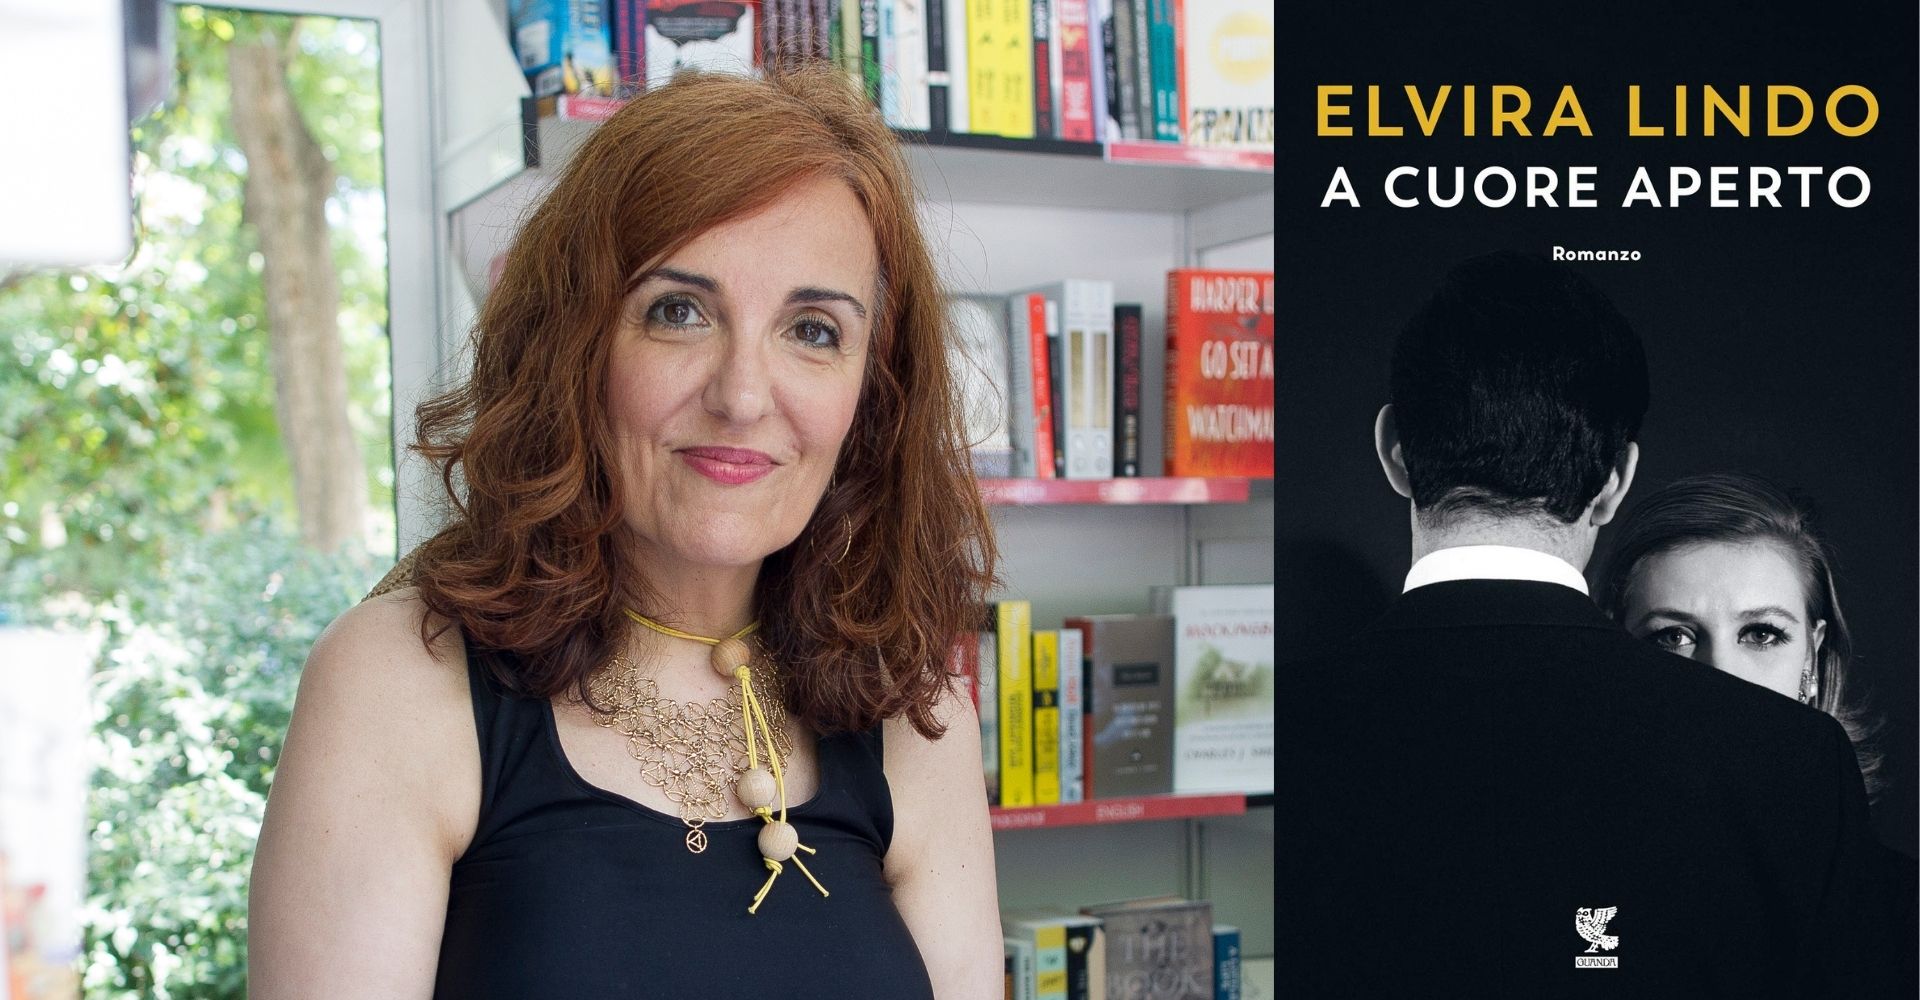 Elvira Lindo: "I romanzi famigliari sono un modo per riflettere su chi ci ha messo al mondo"